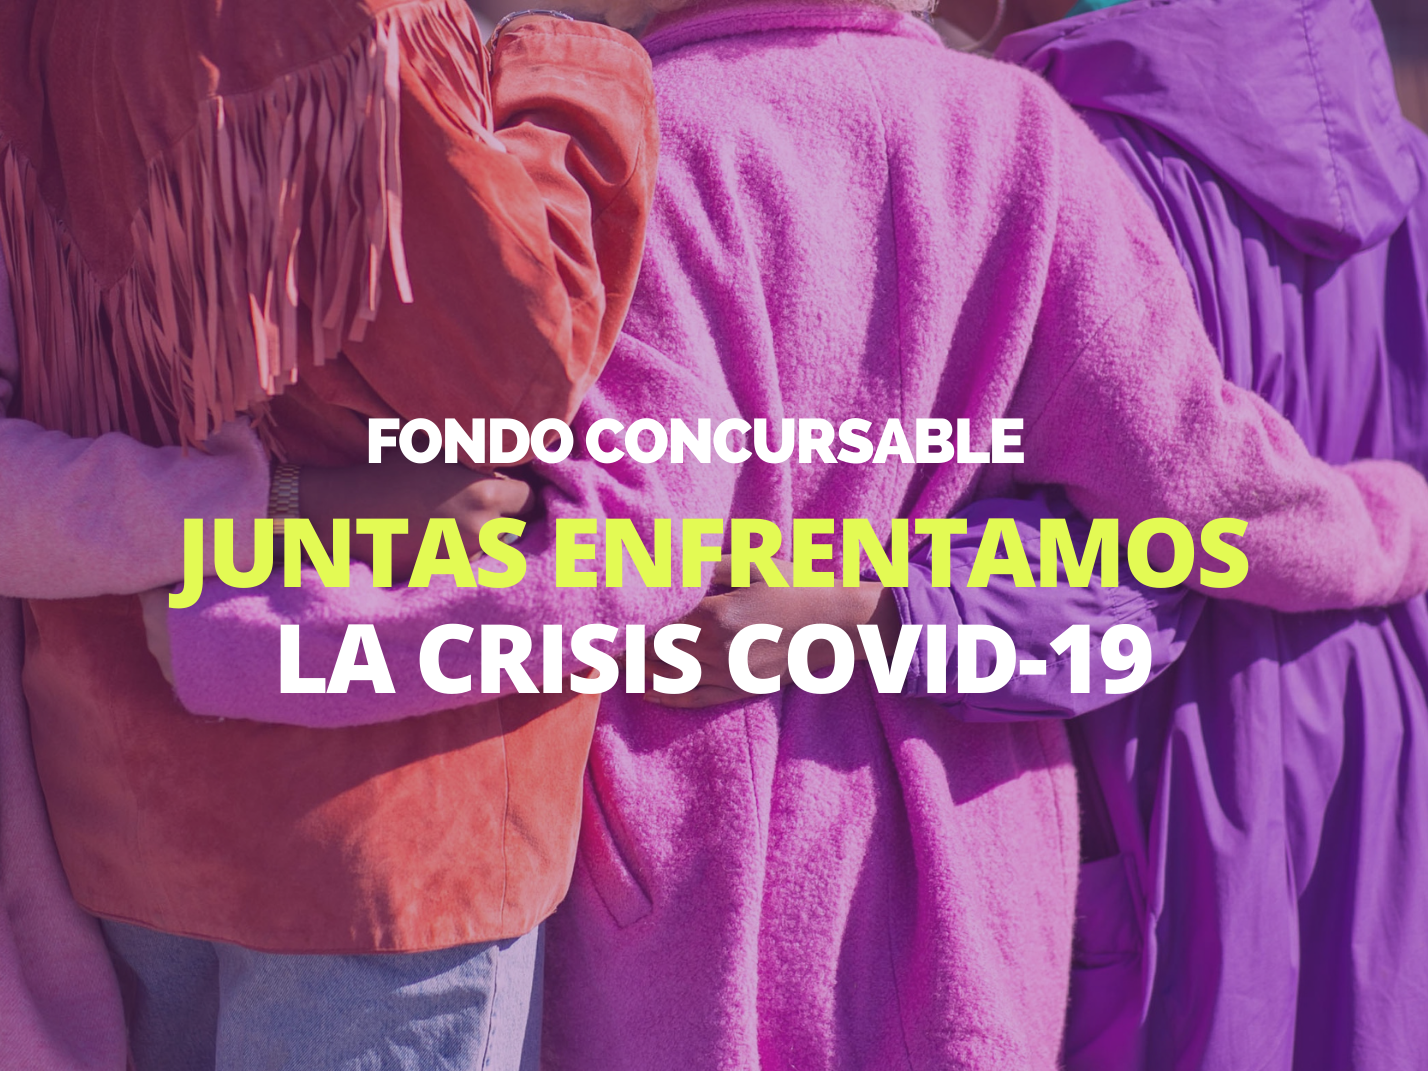 Organizaciones de mujeres de todo Chile se adjudican fondo concursable juntas enfrentamos la crisis Covid-19